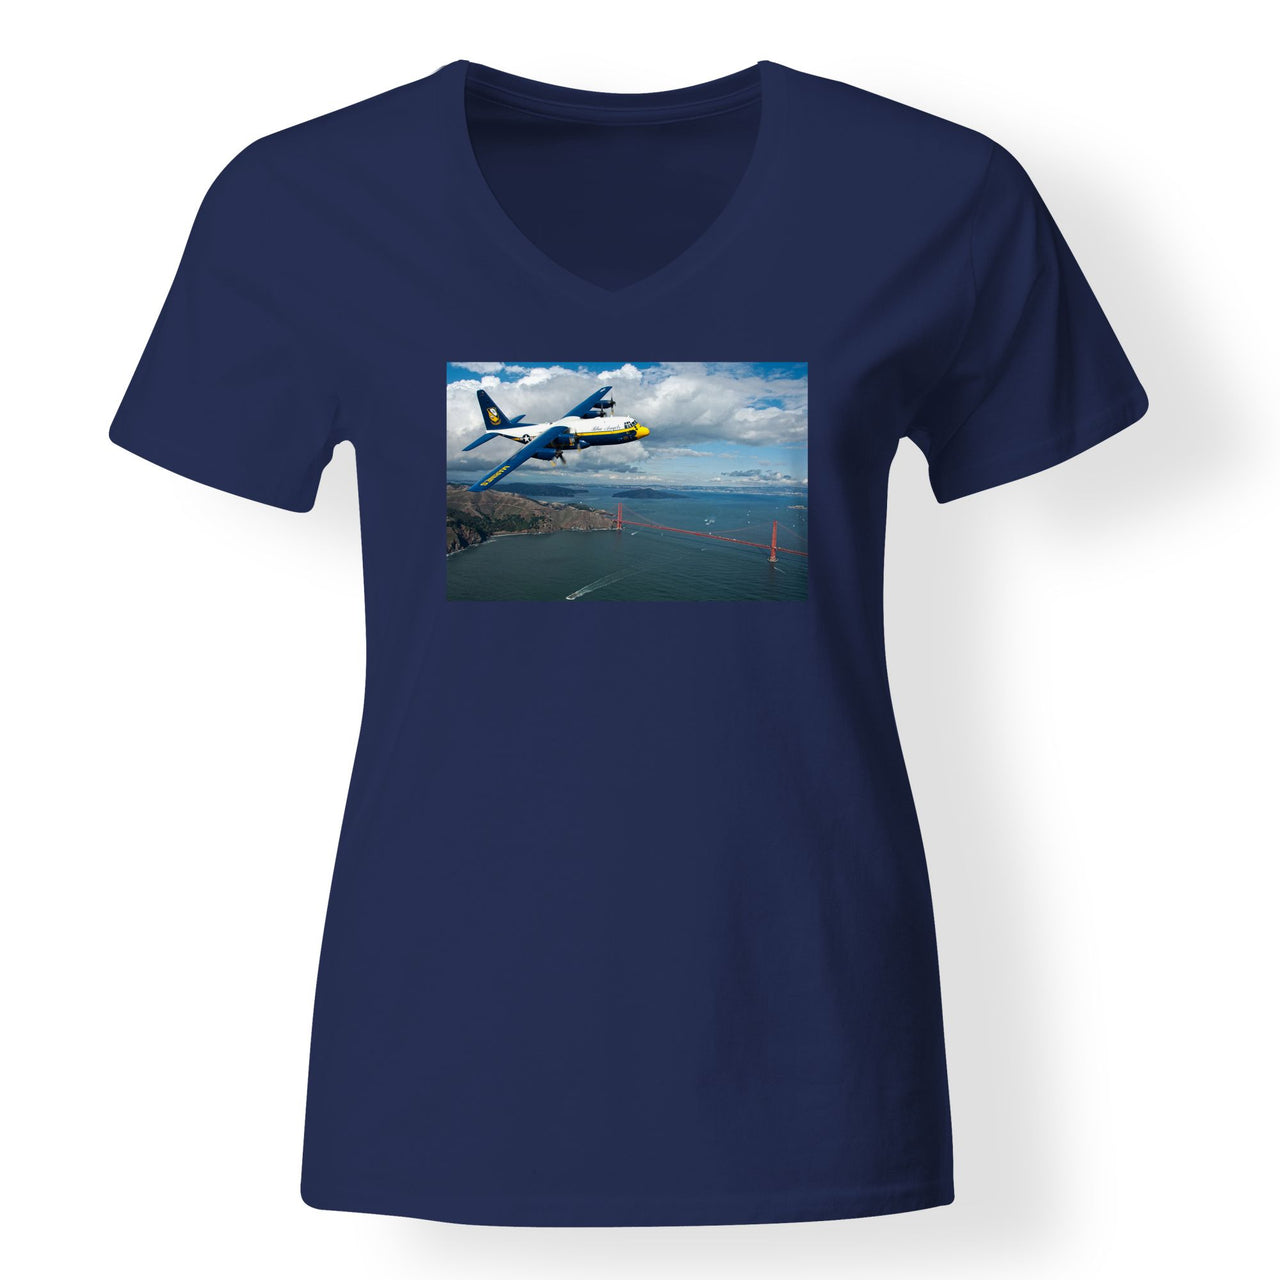 Blue Angels & Bridge Designed V-Neck T-Shirts